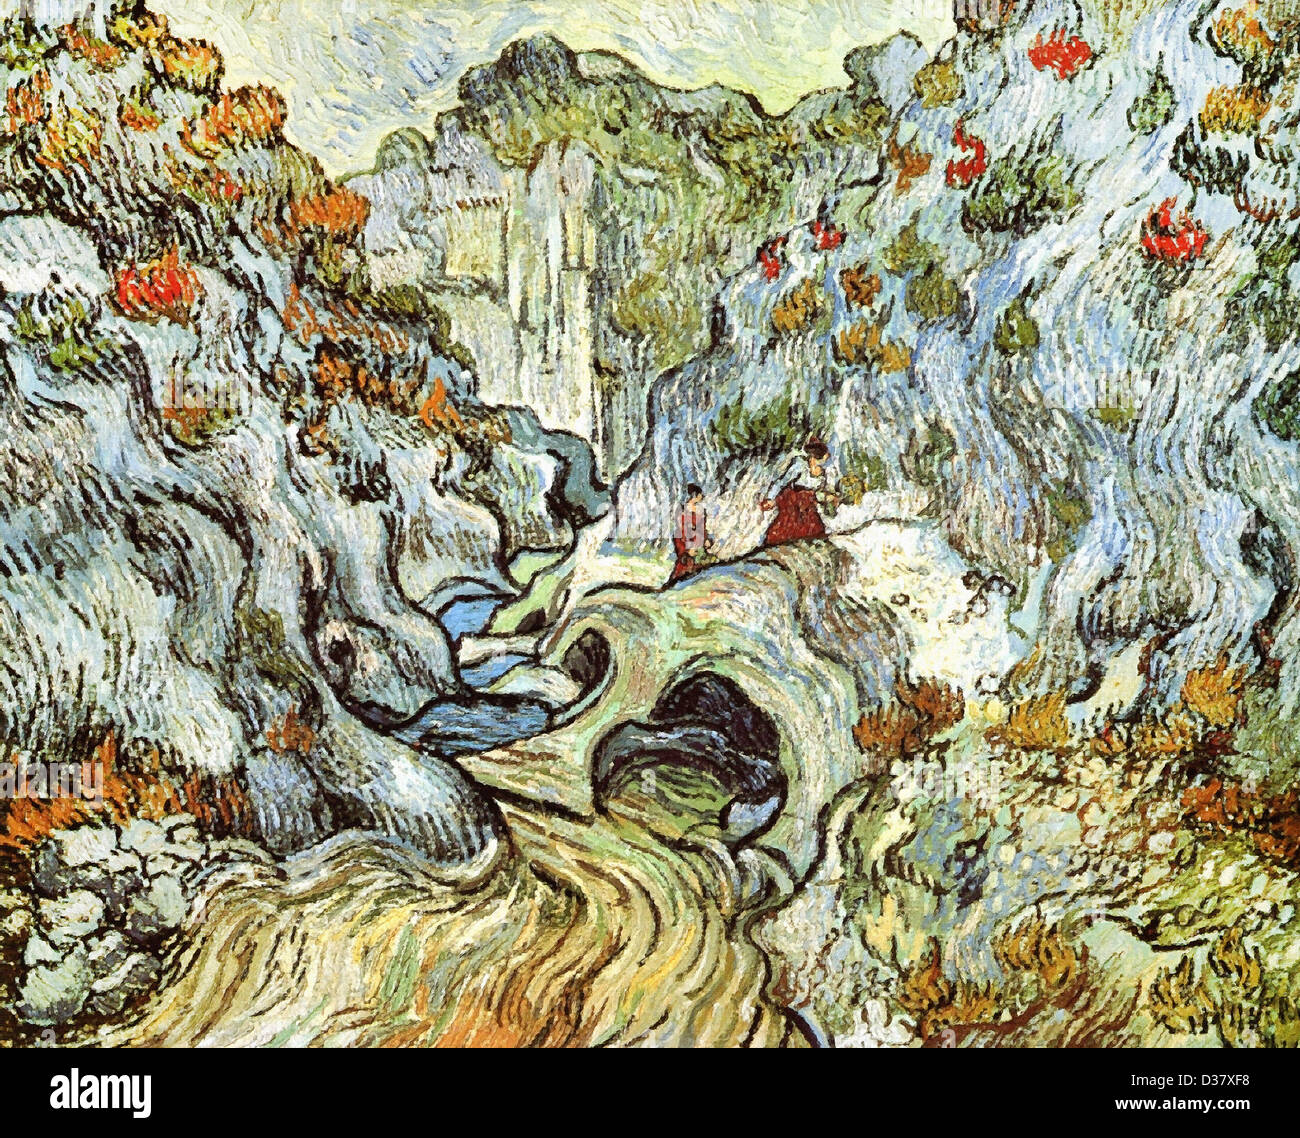 Vincent van Gogh, el barranco del Peyroulets. 1889. Posimpresionismo. Óleo sobre lienzo. Rijksmuseum Kröller-Müller, Otterlo Foto de stock